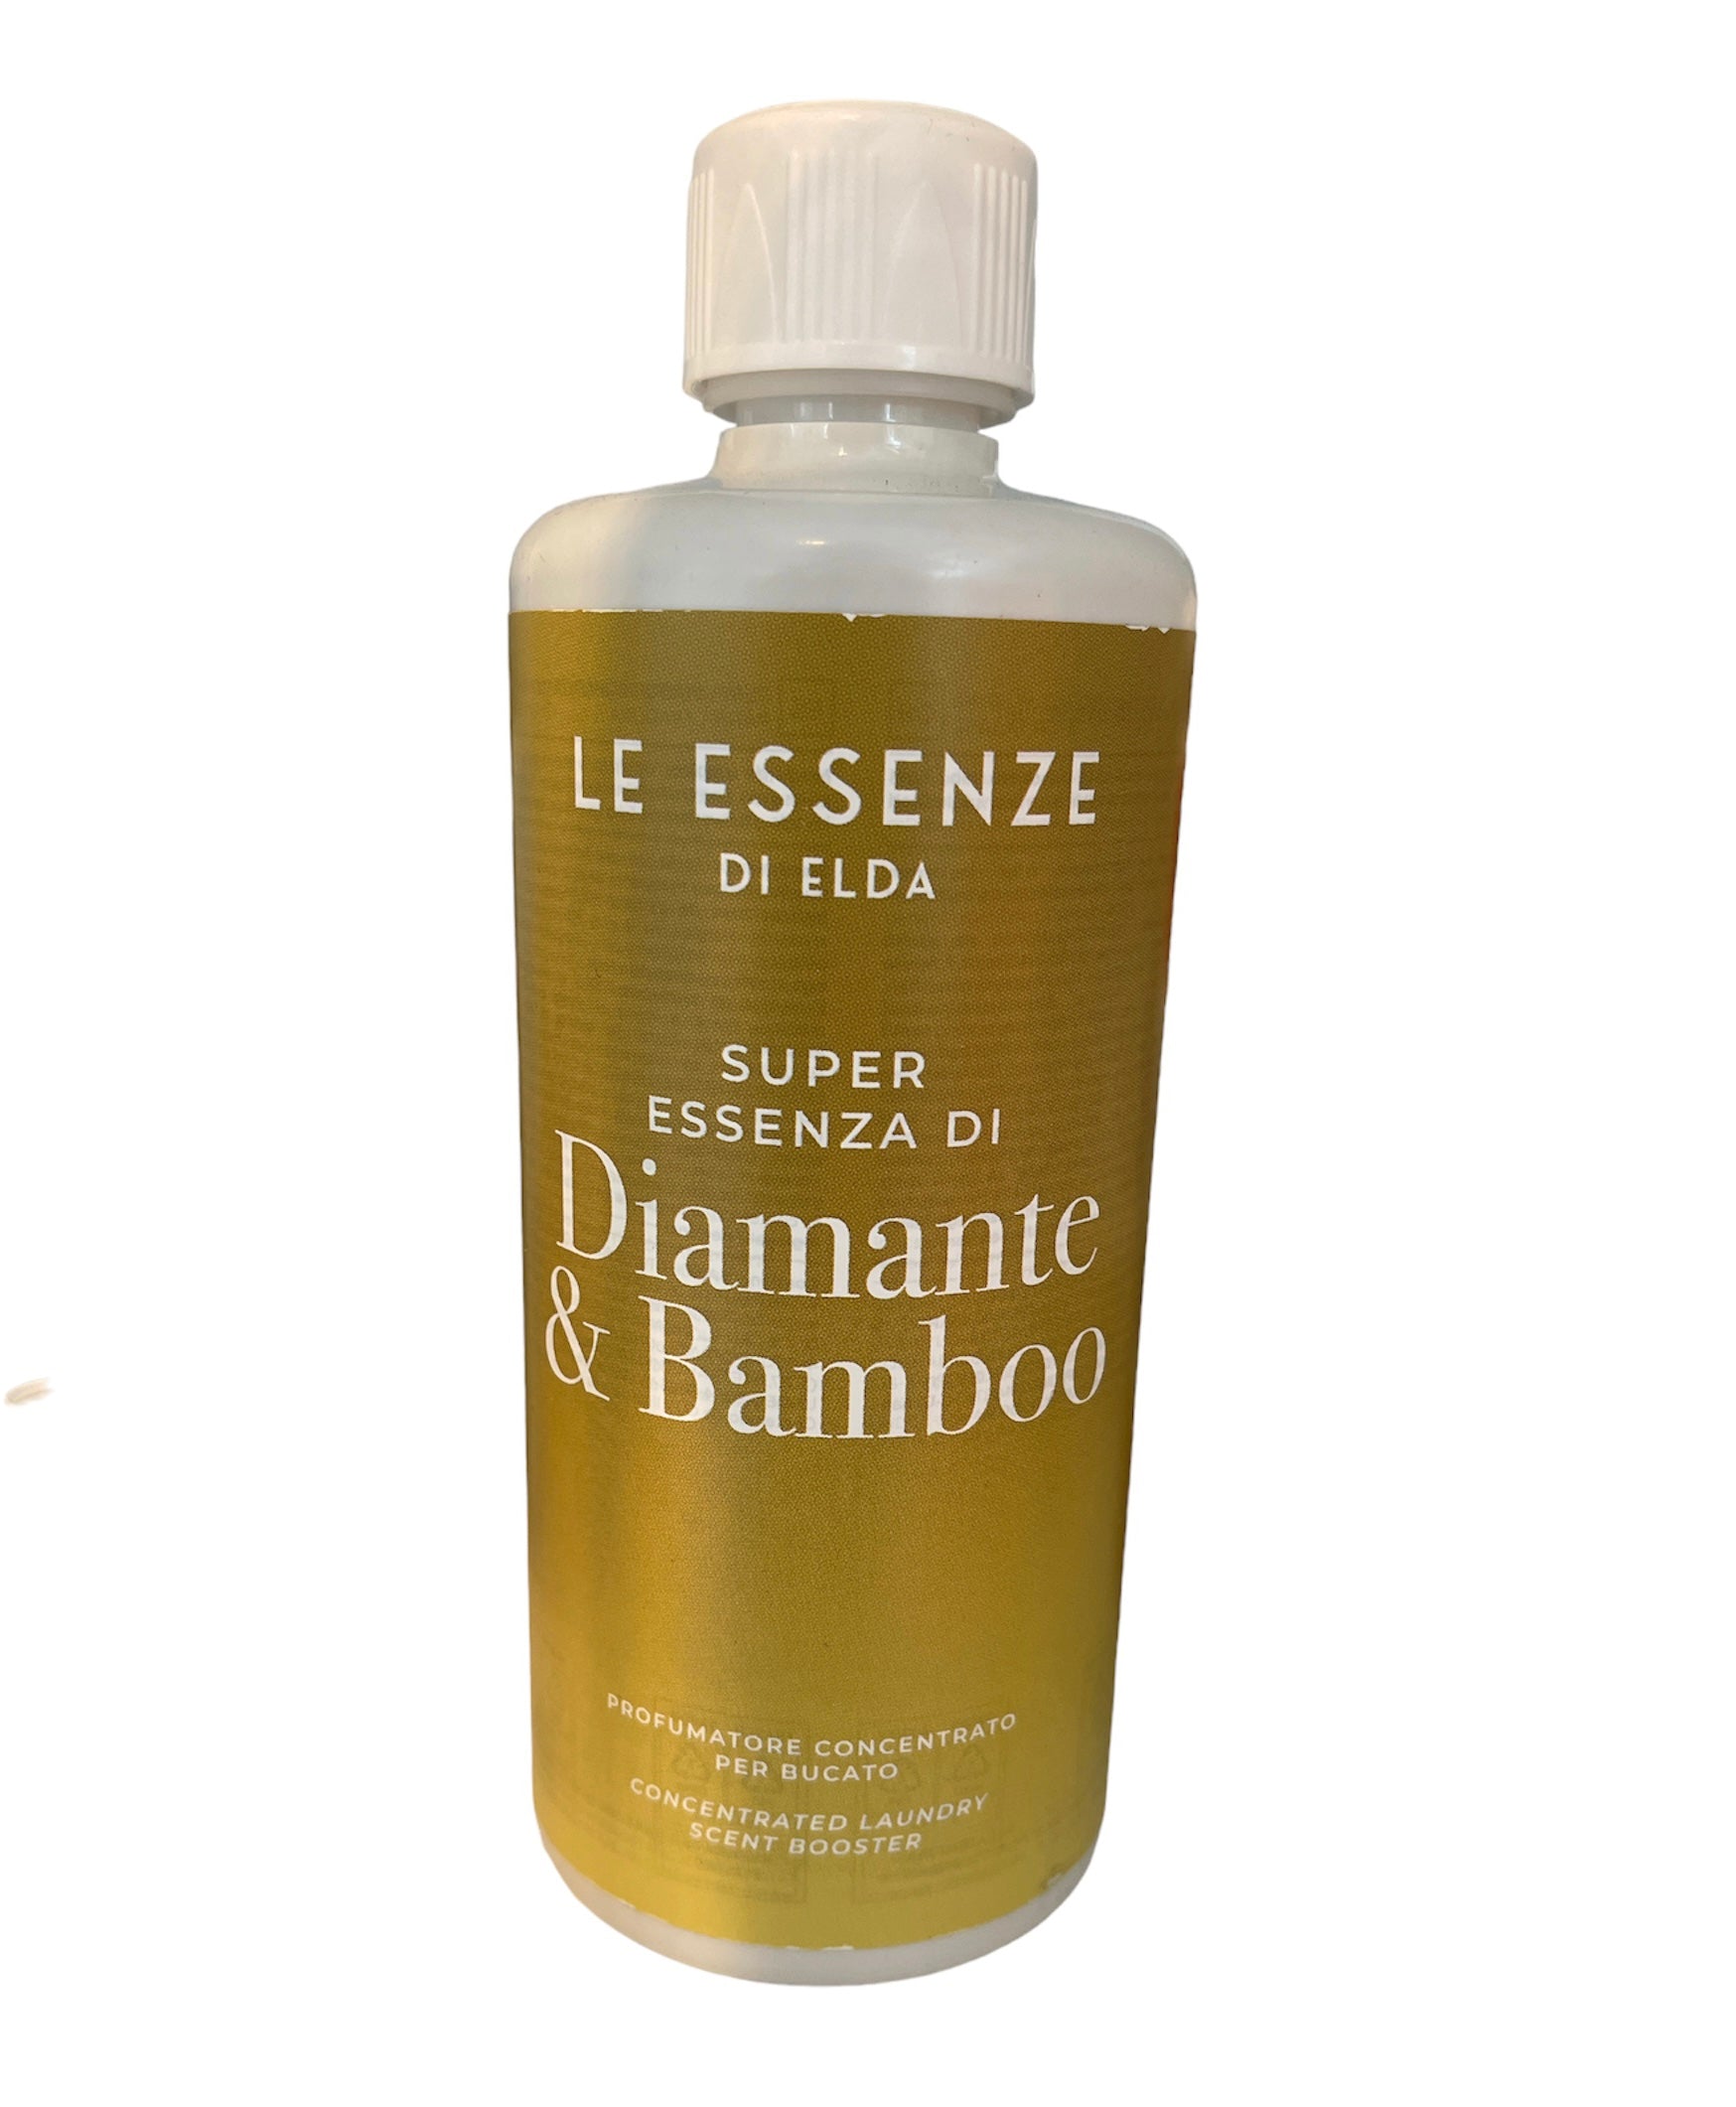 Diamante & Bamboo - Super Essenza per bucato